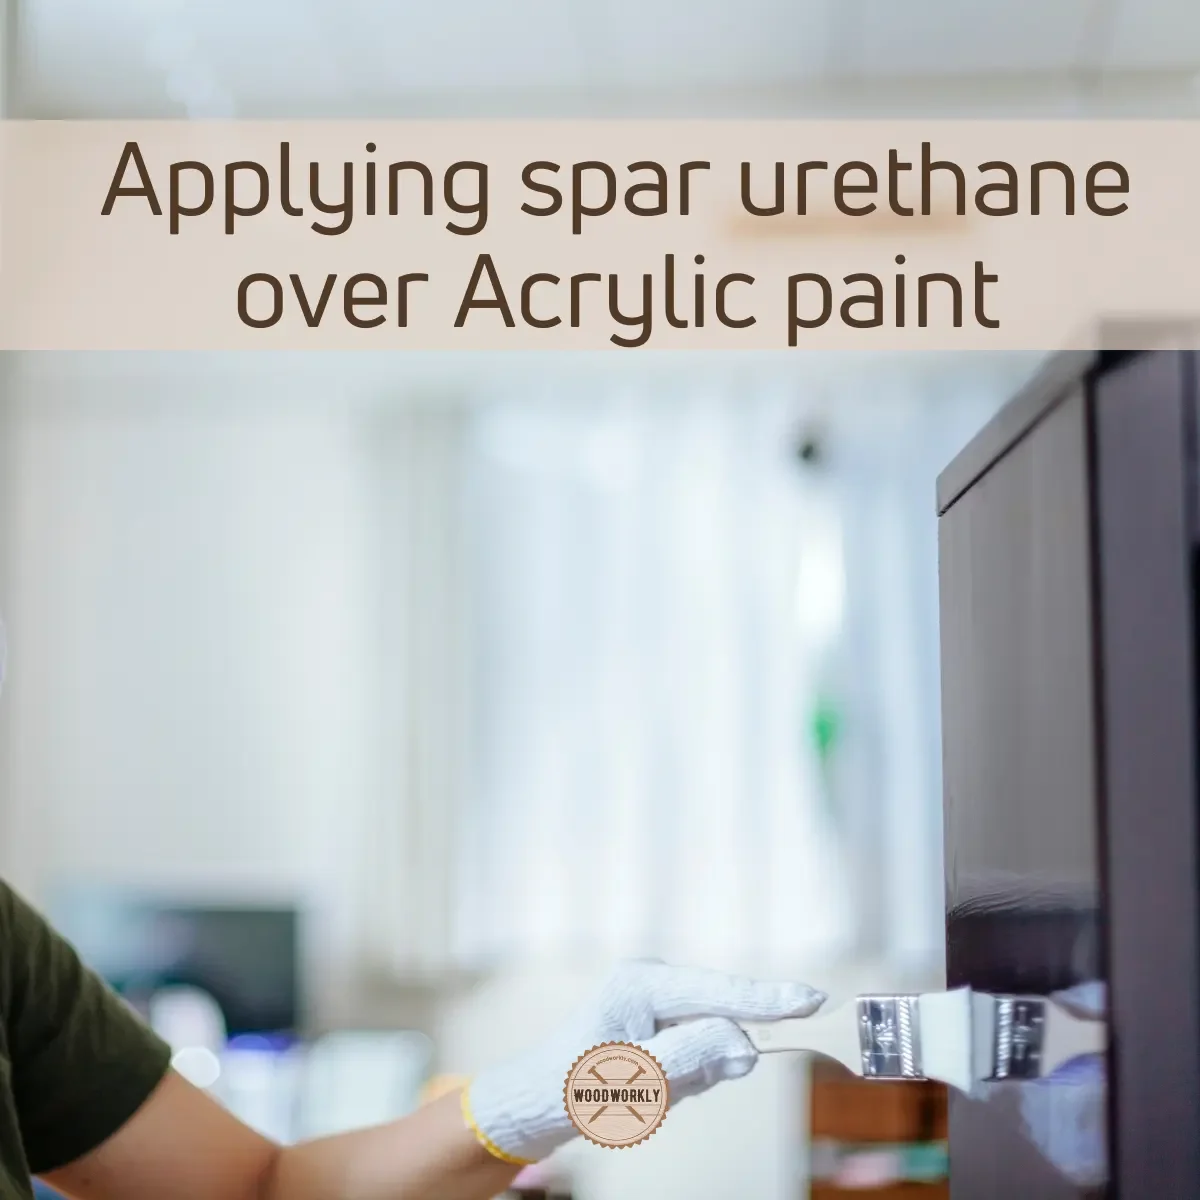 Applying spar urethane over Acrylic paint